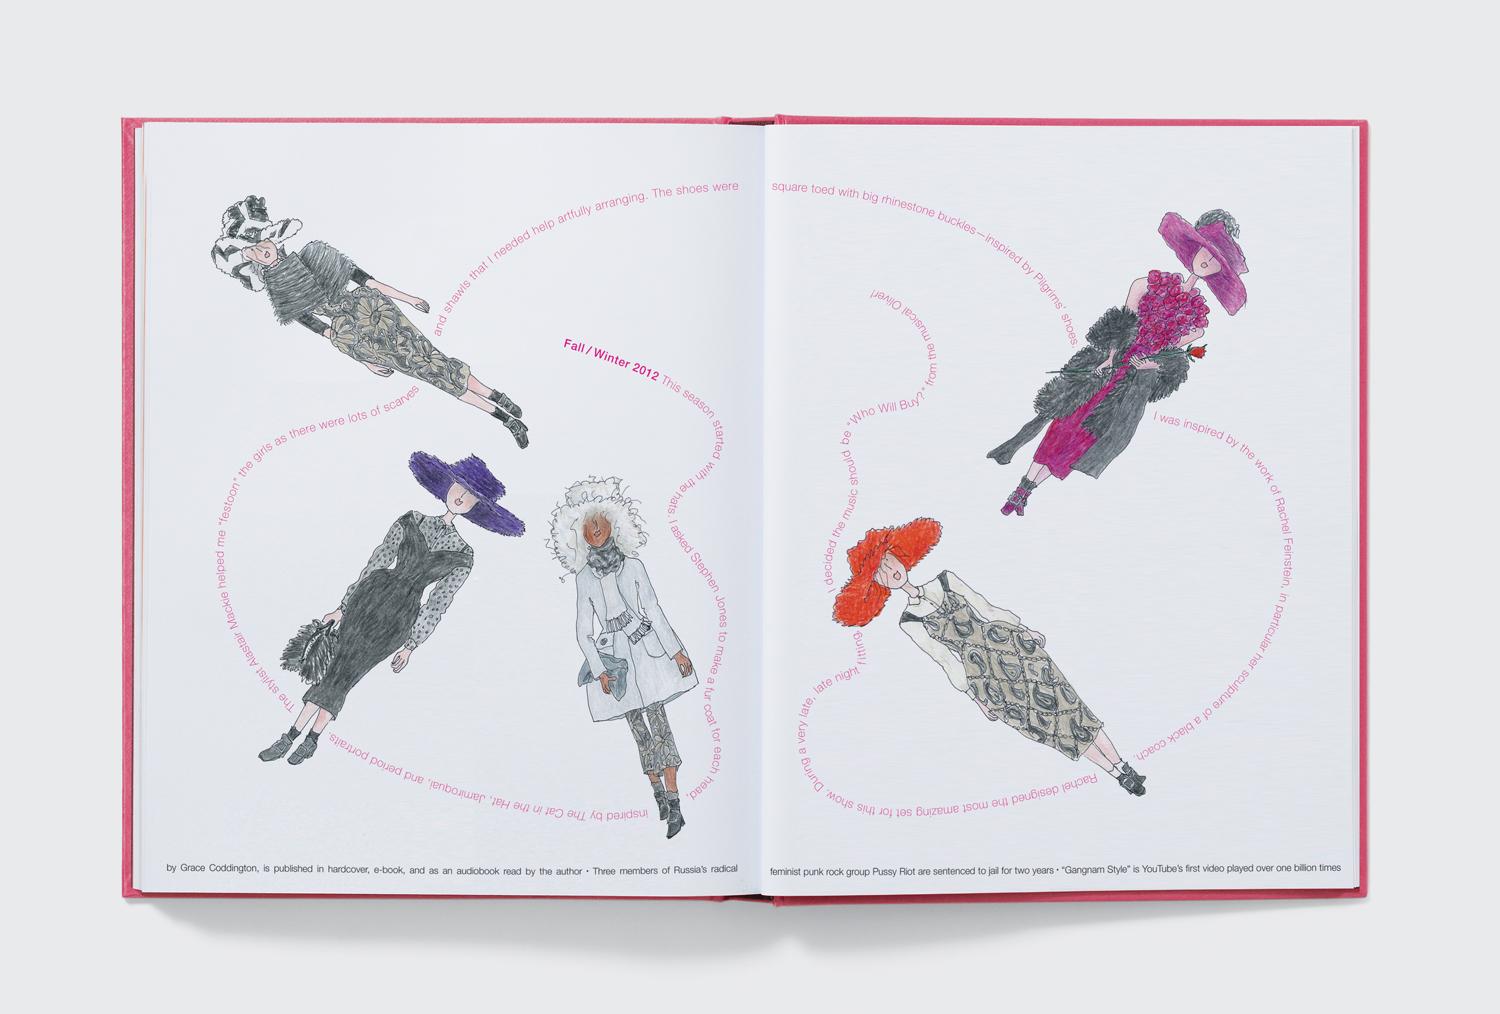 Une monographie unique de plus de 50 collections créées par le créateur de mode Marc Jacobs au cours des 25 dernières années, illustrée par Grace Coddington
En 2016, le créateur de renommée internationale Marc Jacobs a demandé à son amie et